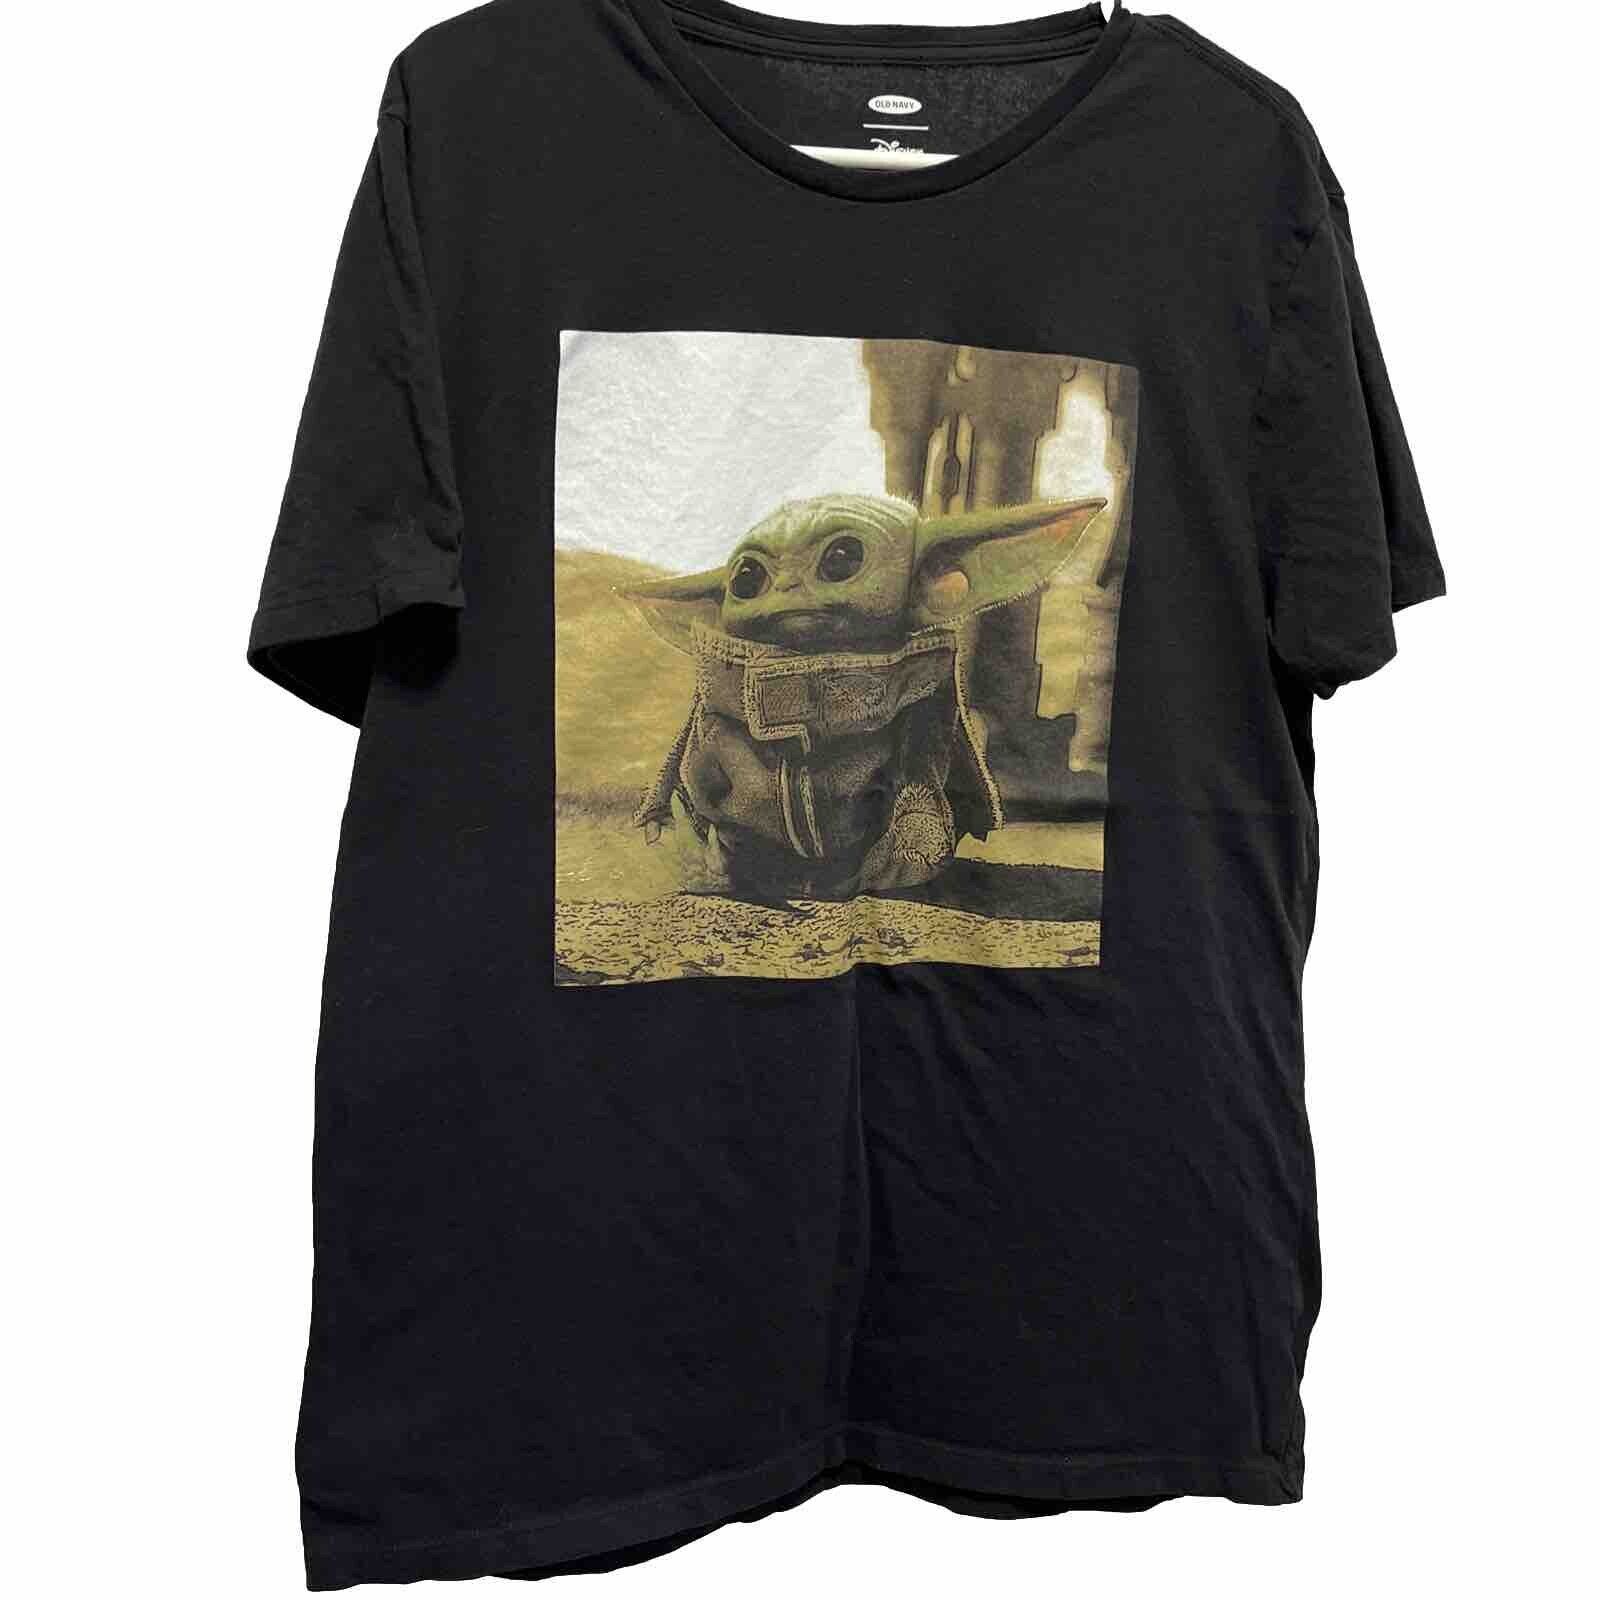 Old Navy Baby Yoda Black T-Shirt The Mandalorian Unisex Size Large Disney Tee